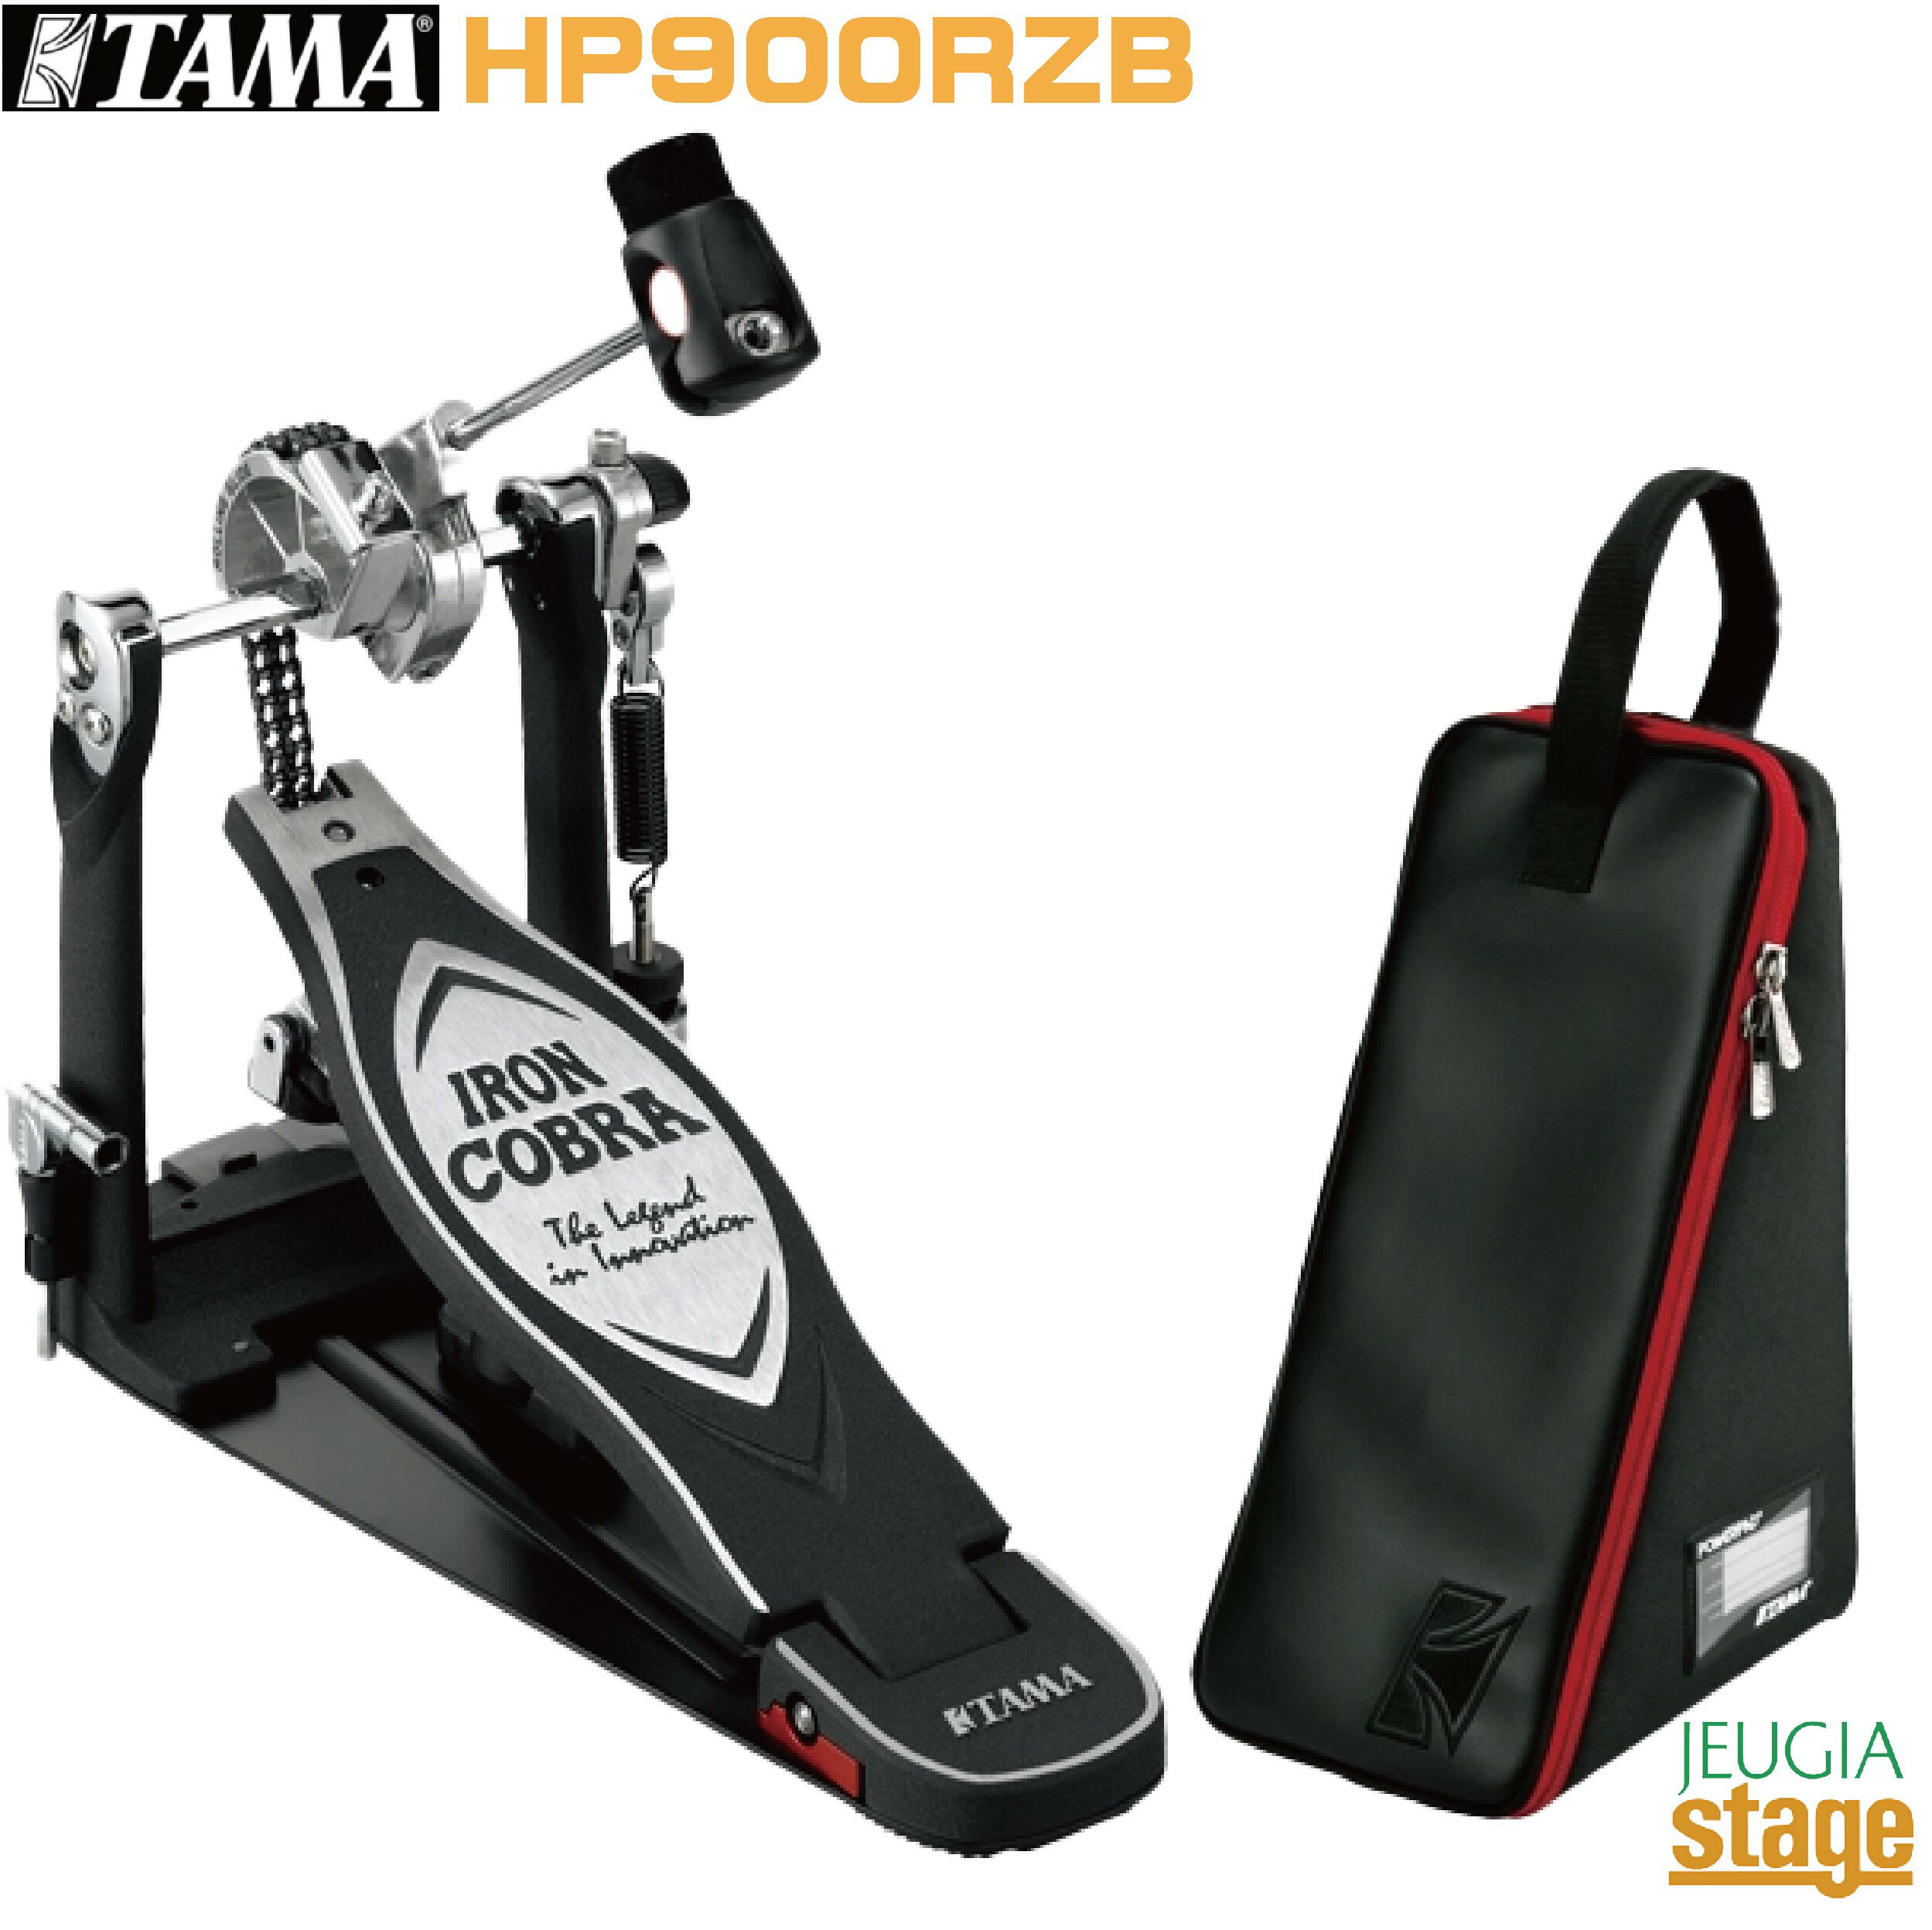 TAMA HP900RZB Iron Cobra 900 Single Pedal / Rolling Glideタマ アイアンコブラ シングルペダル ローリンググライドドラム ハードウェア フットペダル Hardware